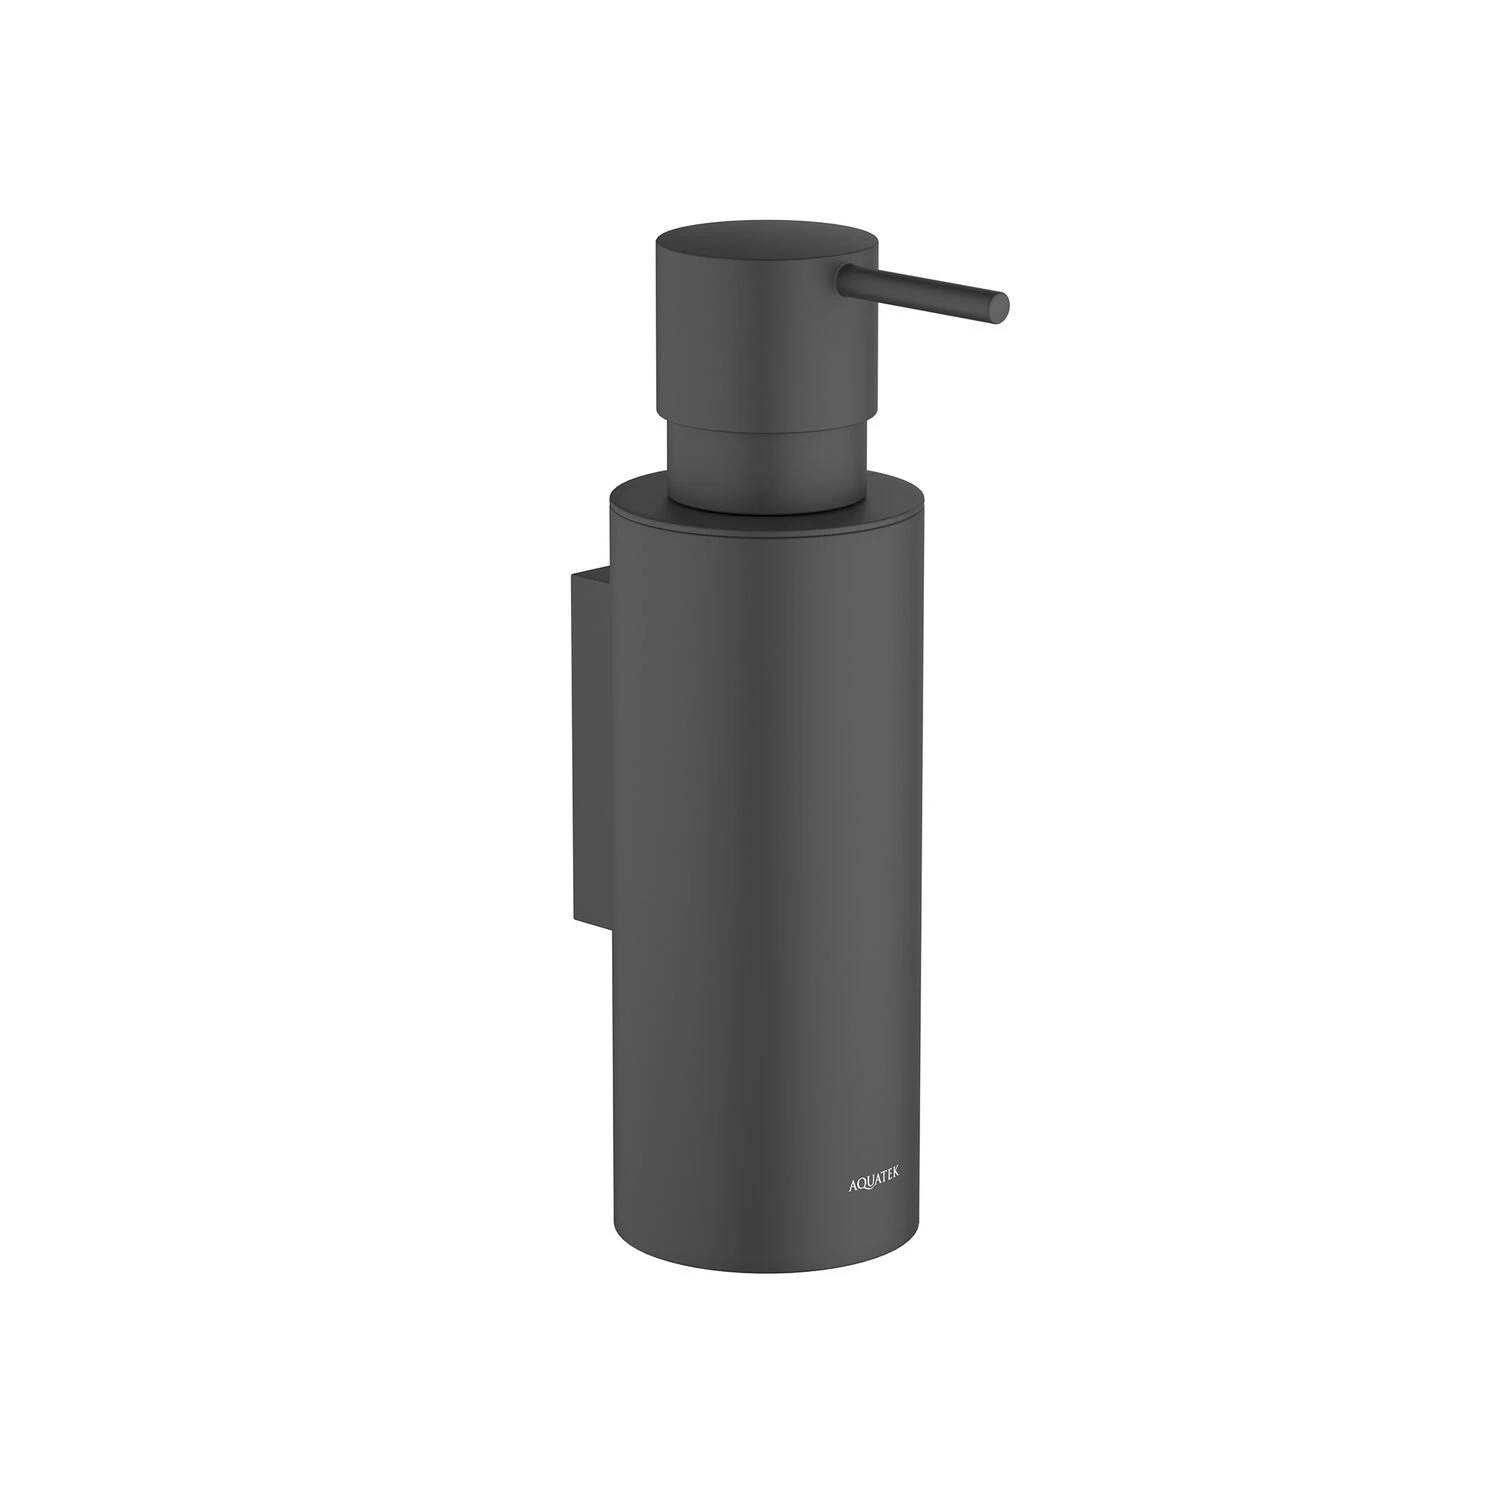 Дозатор Акватек Оберон AQ4205MB для жидкого мыла, подвесной, цвет черный матовый